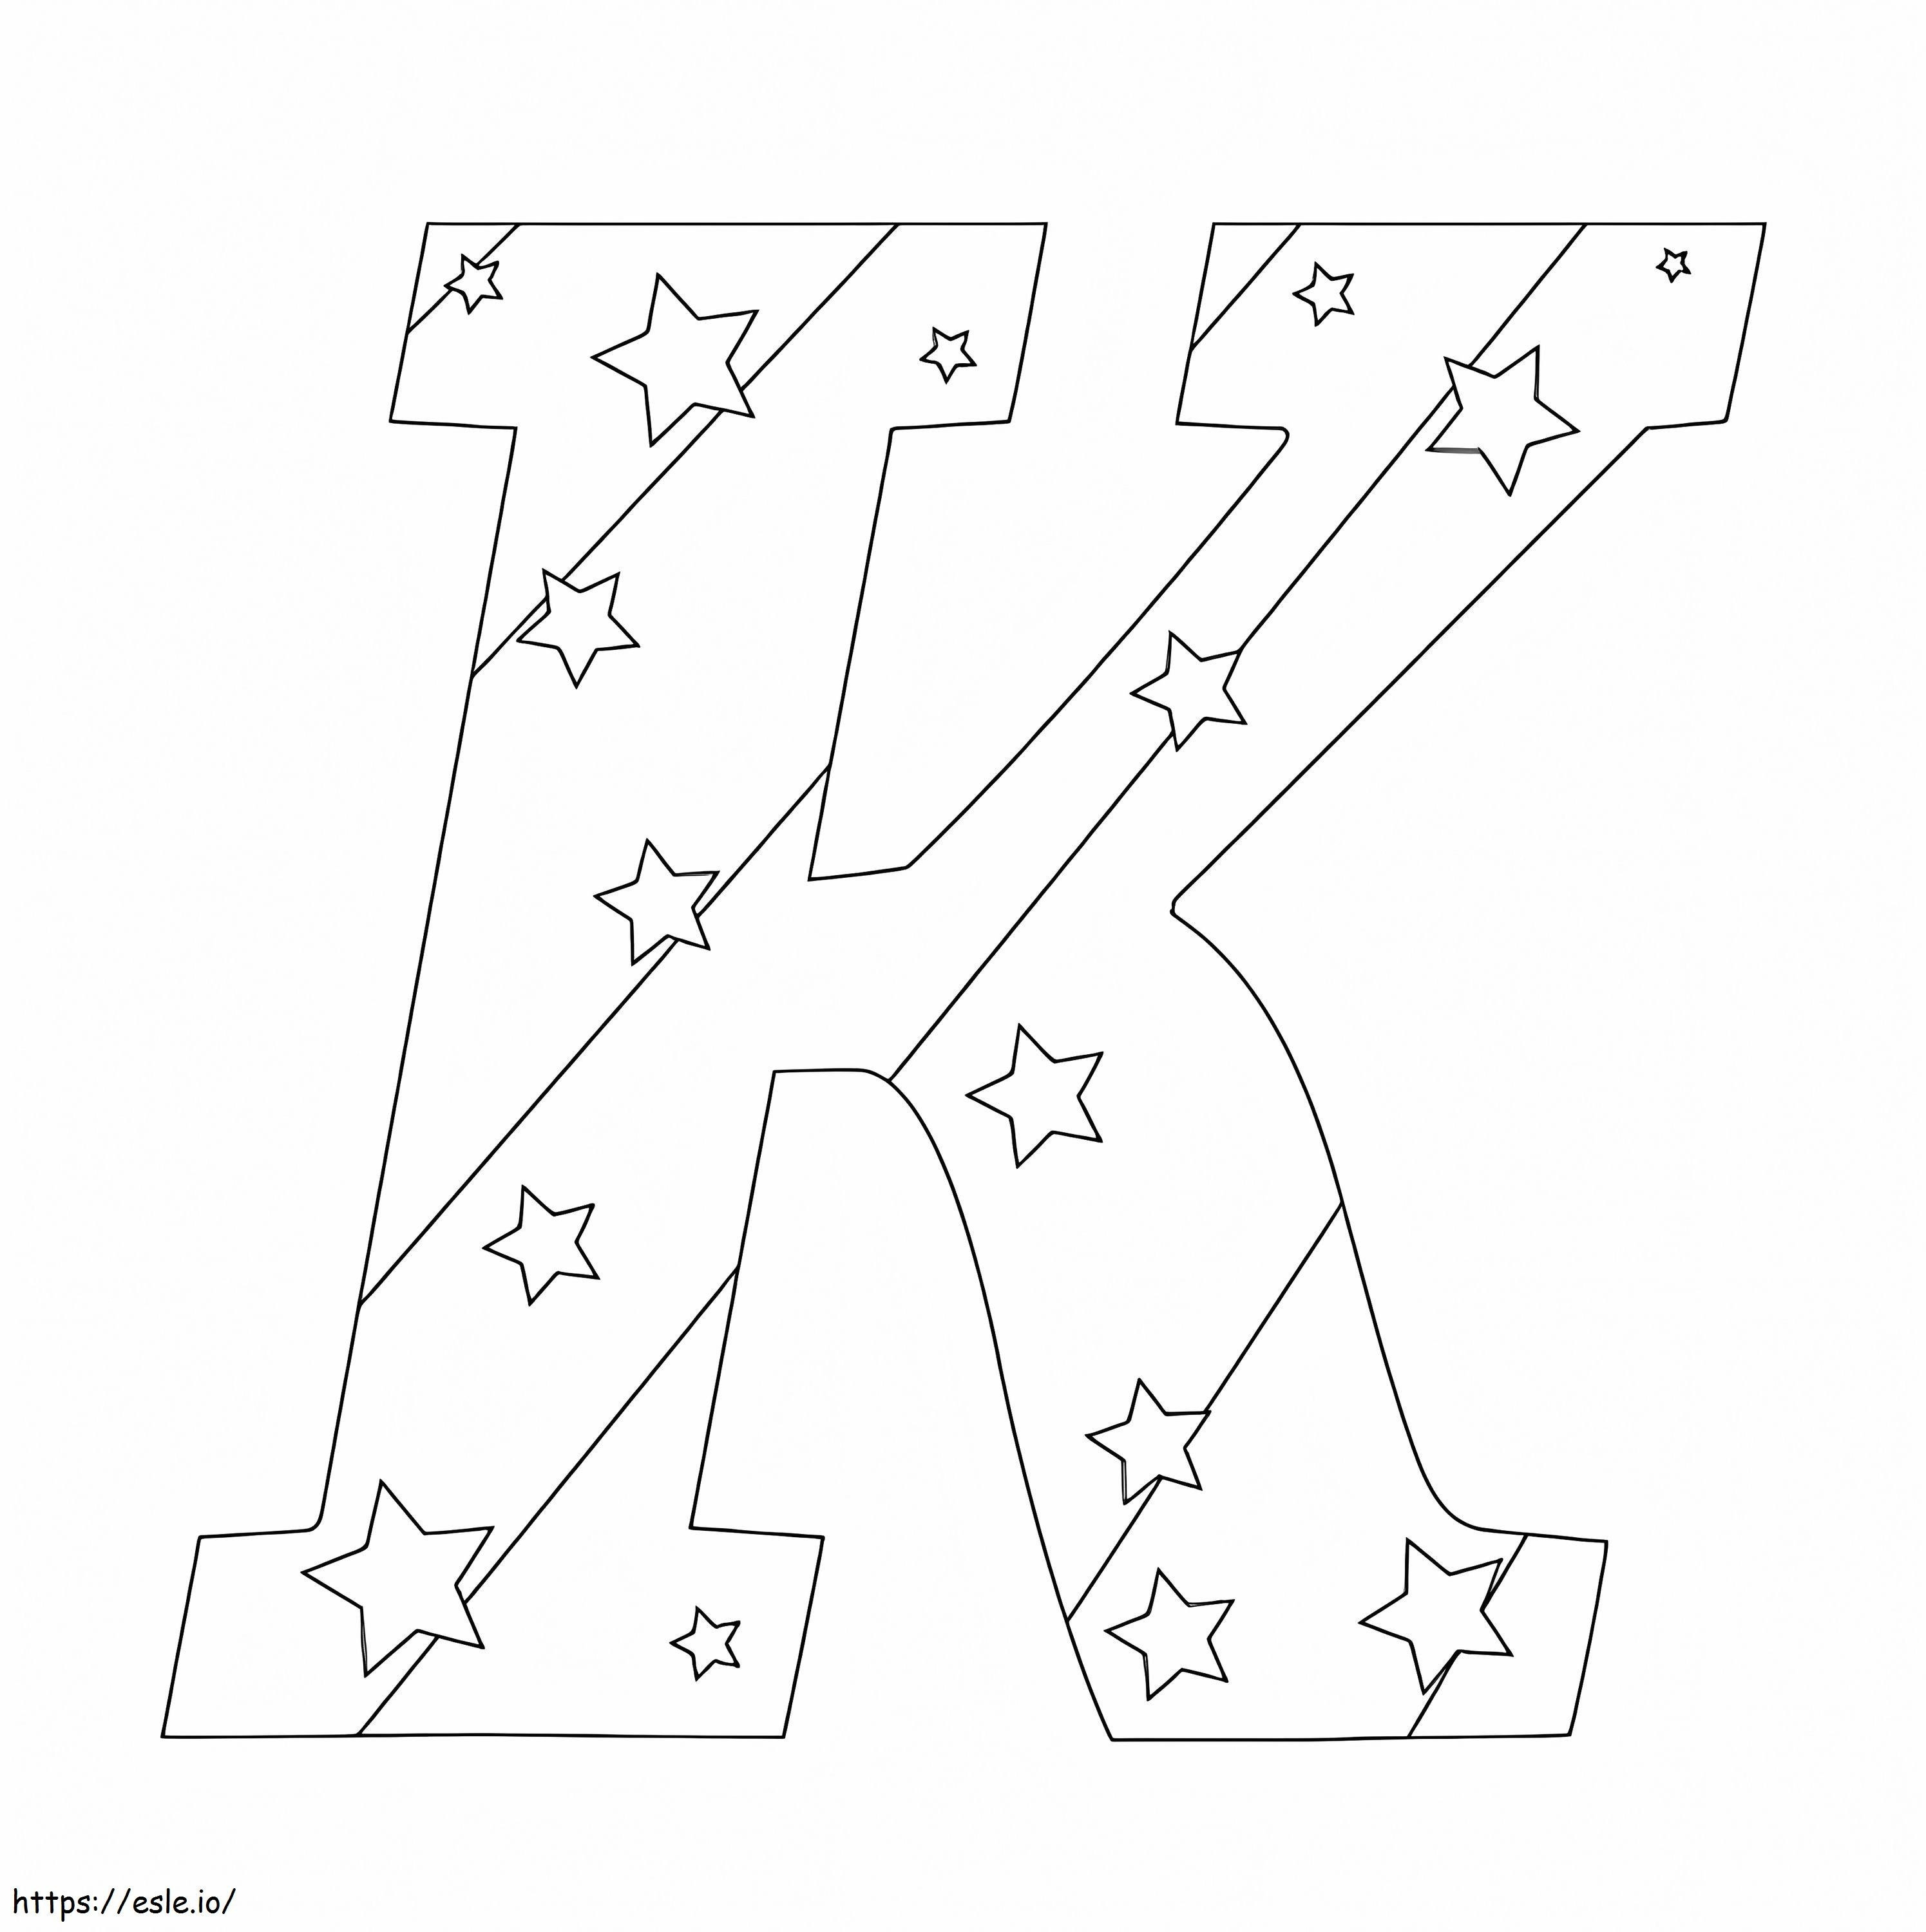 Buchstabe K mit Sternen ausmalbilder